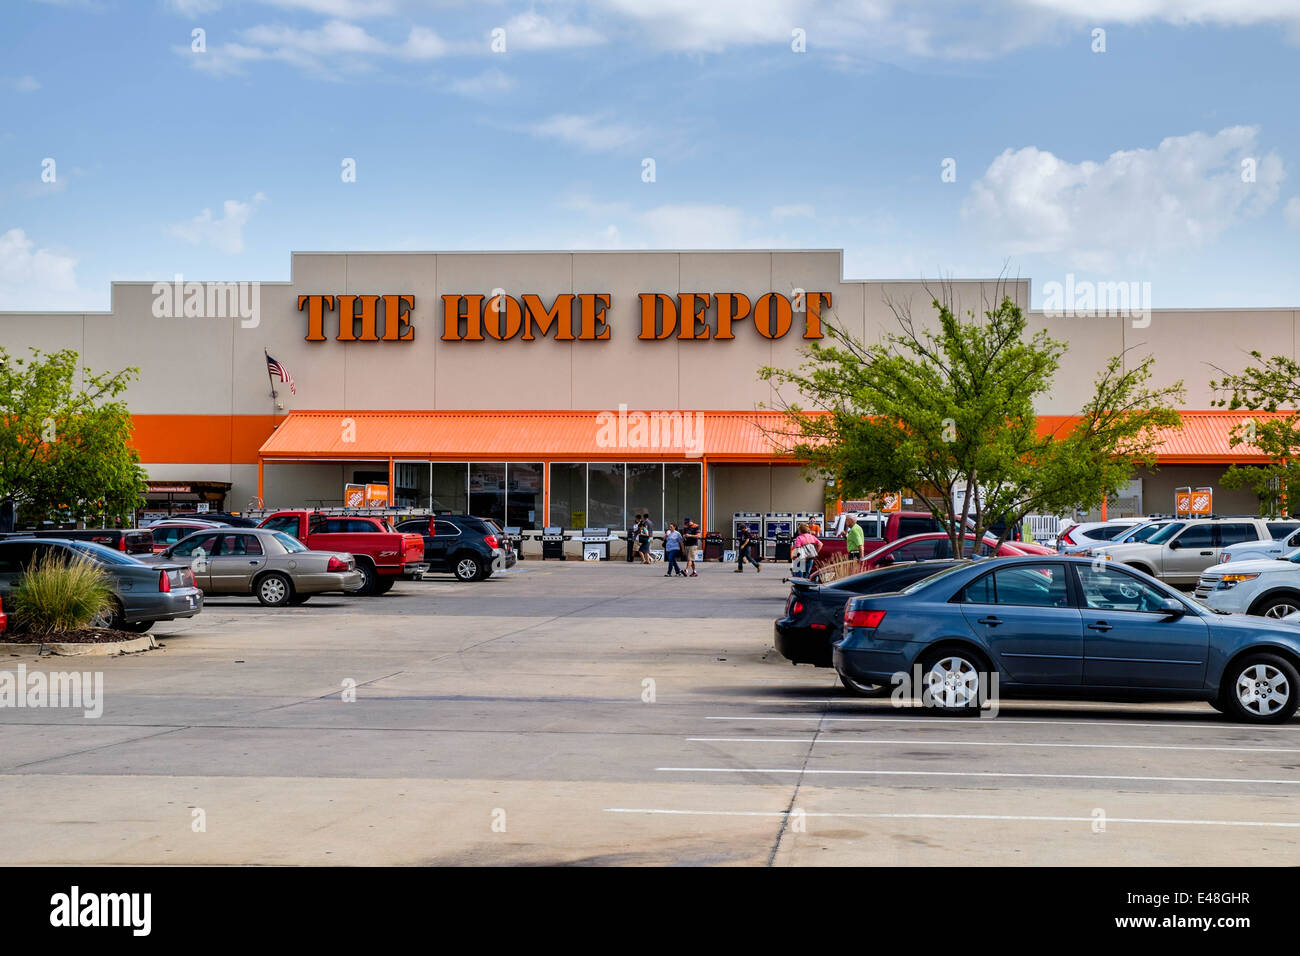 Die vordere Eintrag äußere Der Home Depot, eine Kette Building Supply Store in Oklahoma City, Oklahoma, USA. Stockfoto